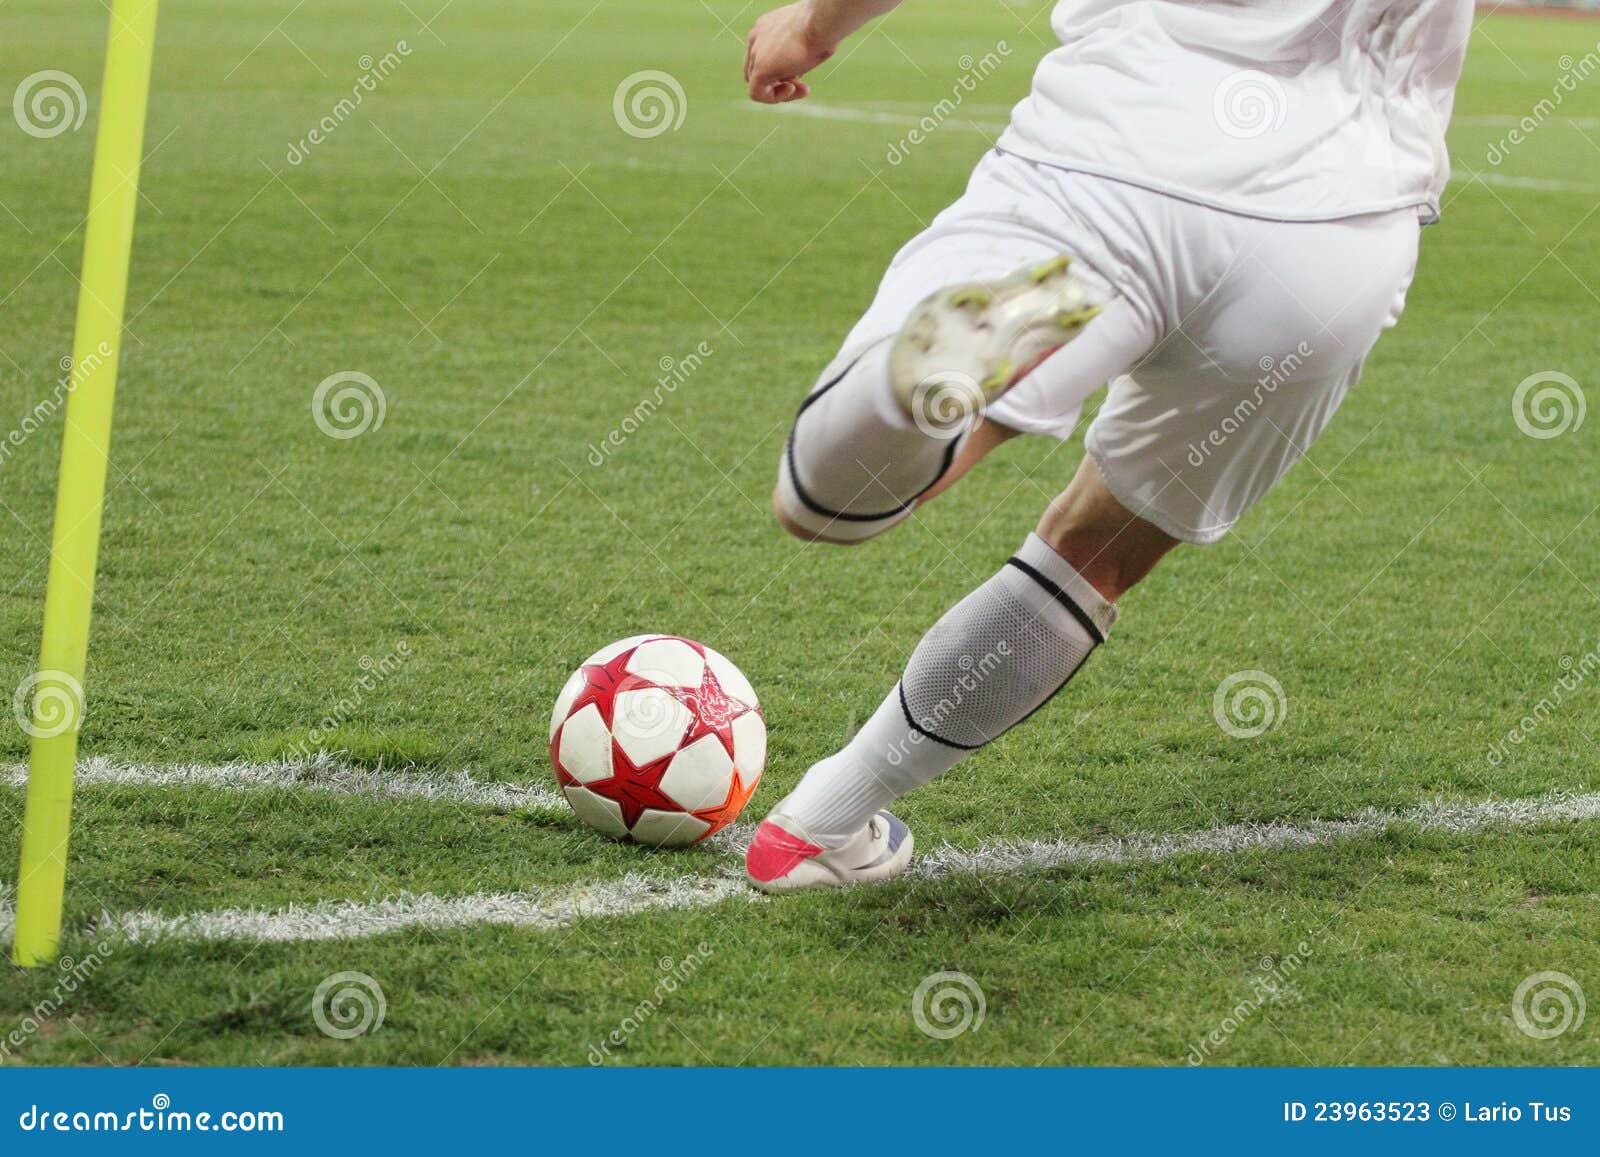 soccer corner kick